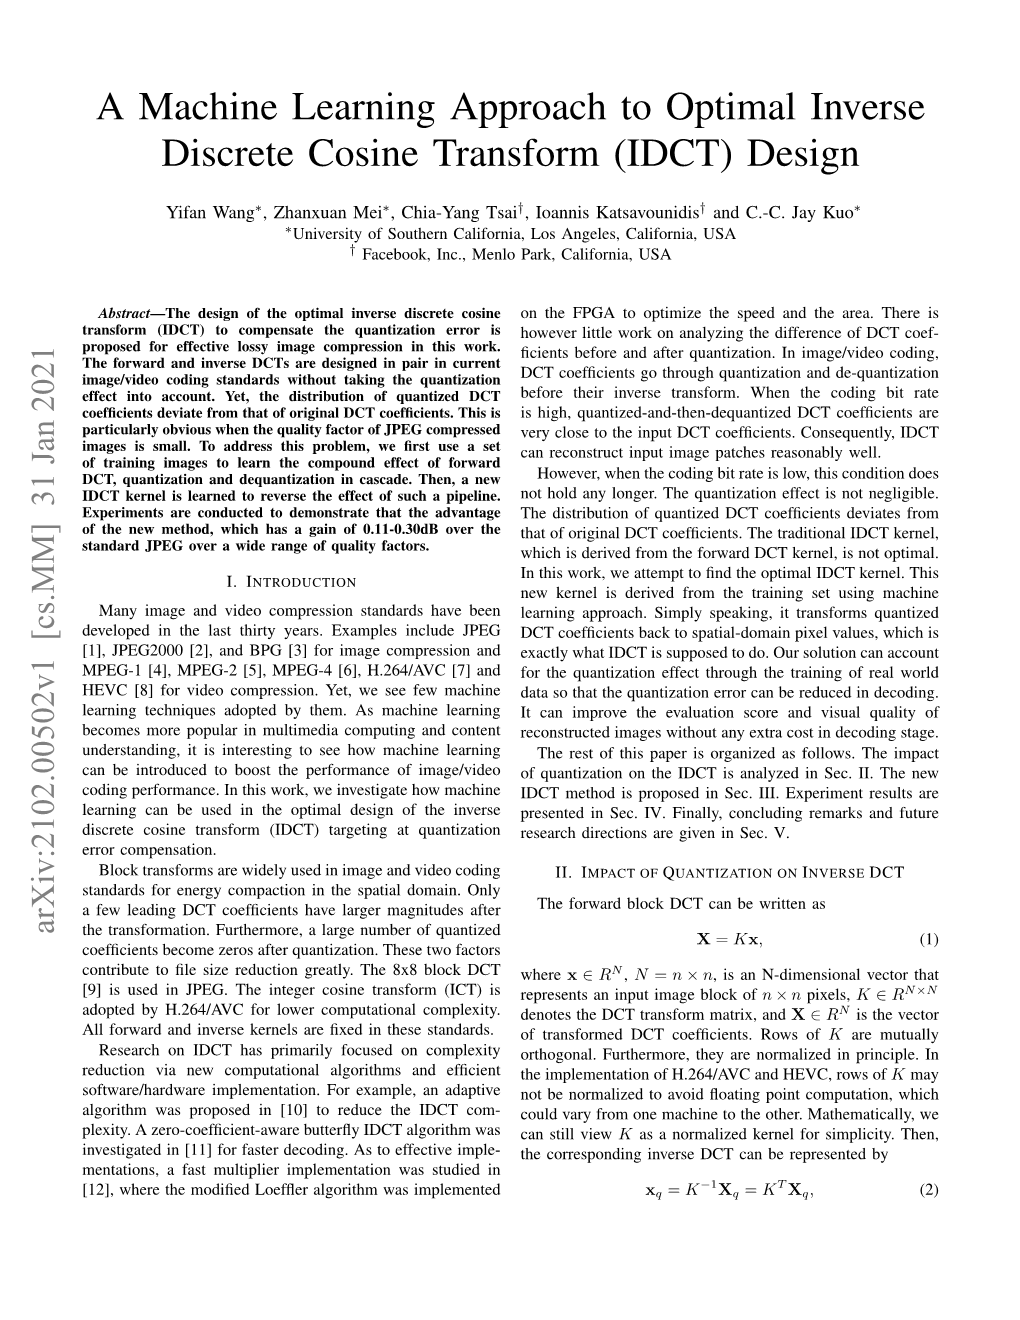 A Machine Learning Approach to Optimal Inverse Discrete Cosine Transform (IDCT) Design